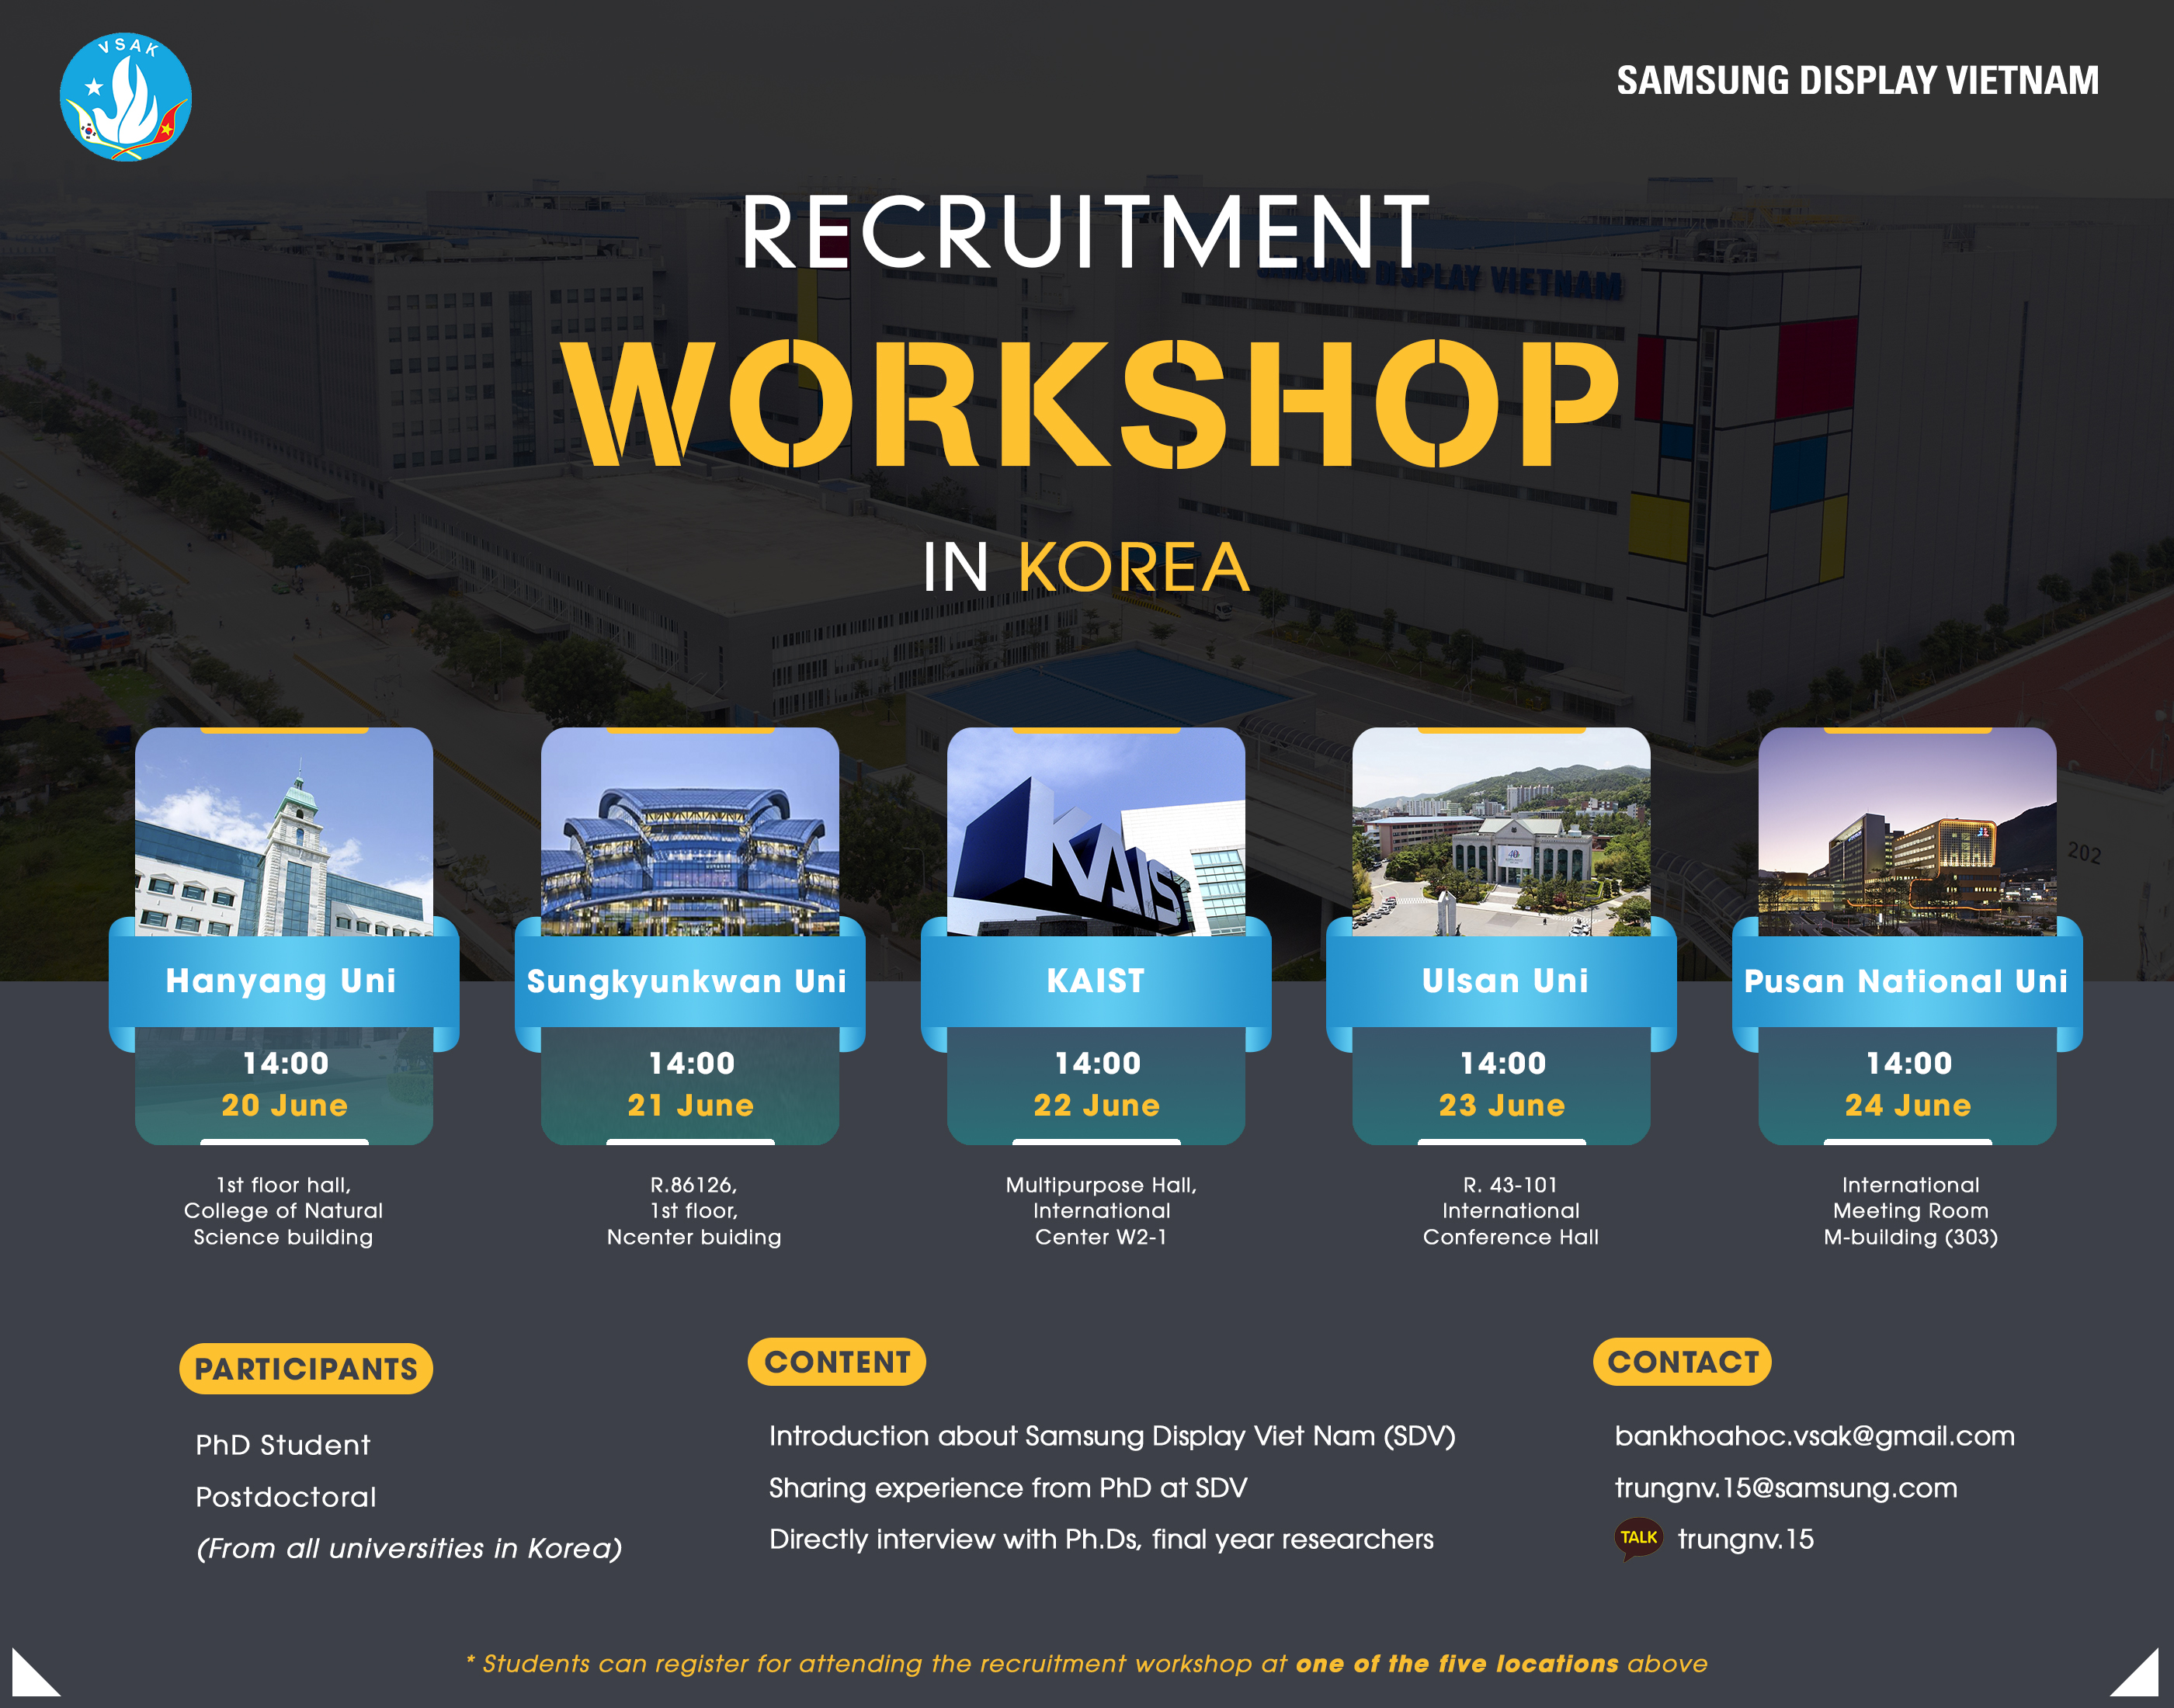 Workshop tuyển dụng của công ty Samsung Display Vietnam (SDV) phối hợp cùng VSAK tổ chức